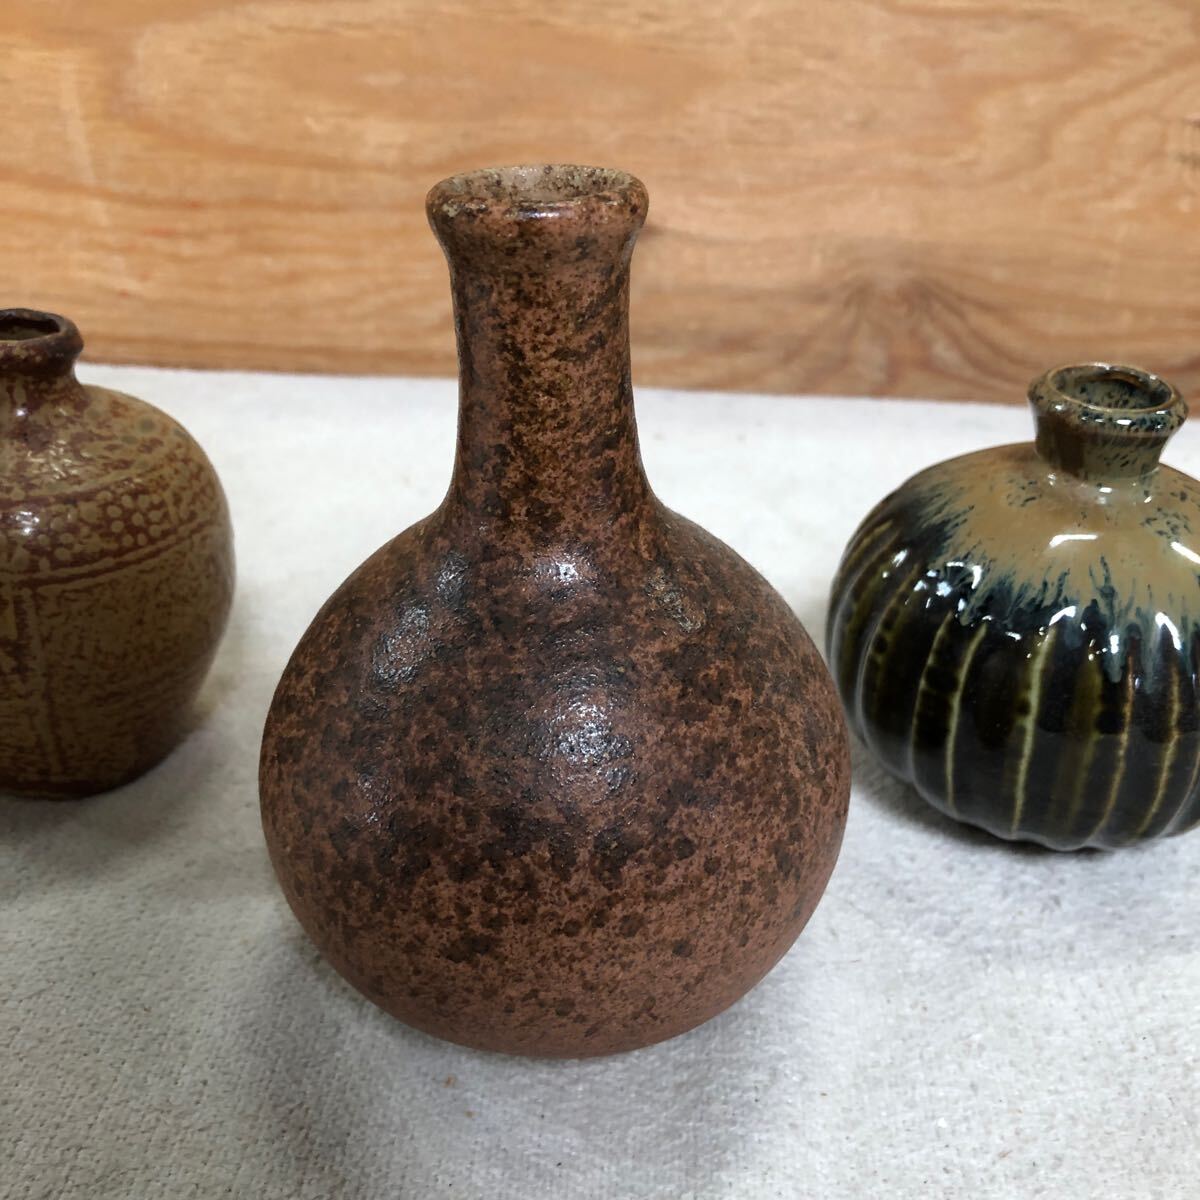  ваза ваза для цветов один колесо .. керамика Shigaraki Bizen . б/у меньше 4 пункт суммировать интерьер античный изделие прикладного искусства 